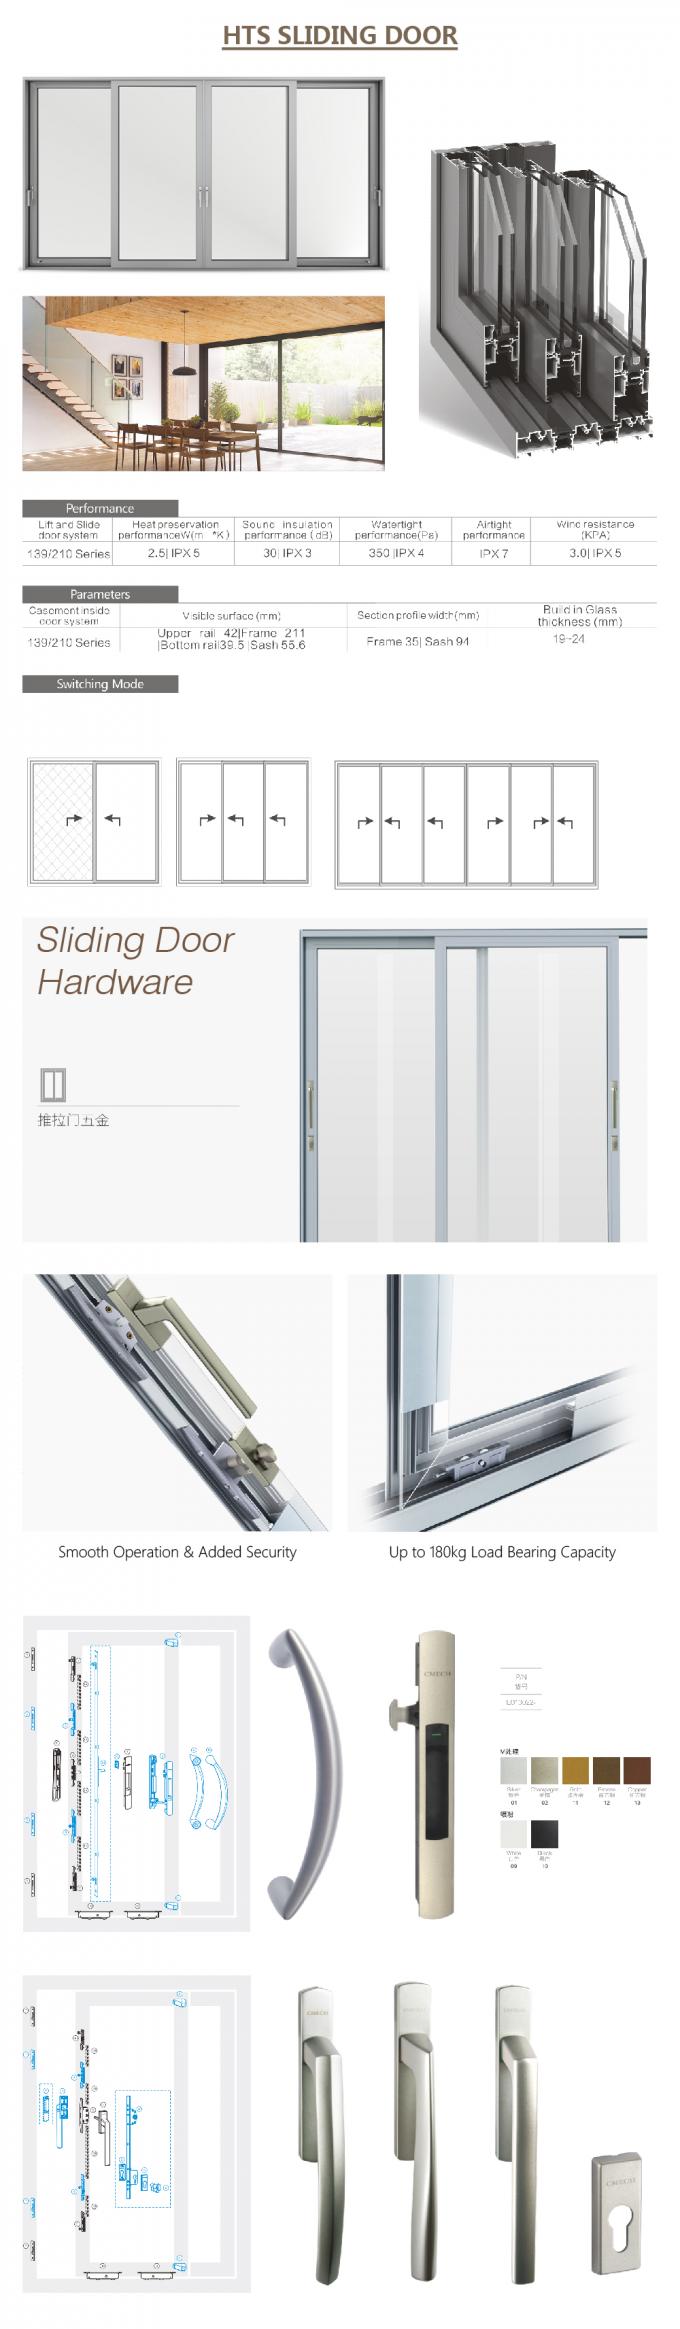 κινεζική συρόμενη πόρτα, σχεδιάγραμμα αλουμινίου για τη συρόμενη πόρτα γυαλιού, αυτόματη πόρτα που, συρόμενη πόρτα αλουμινίου γυαλιού, λεπτομέρειες πορτών ολίσθησης αλουμινίου